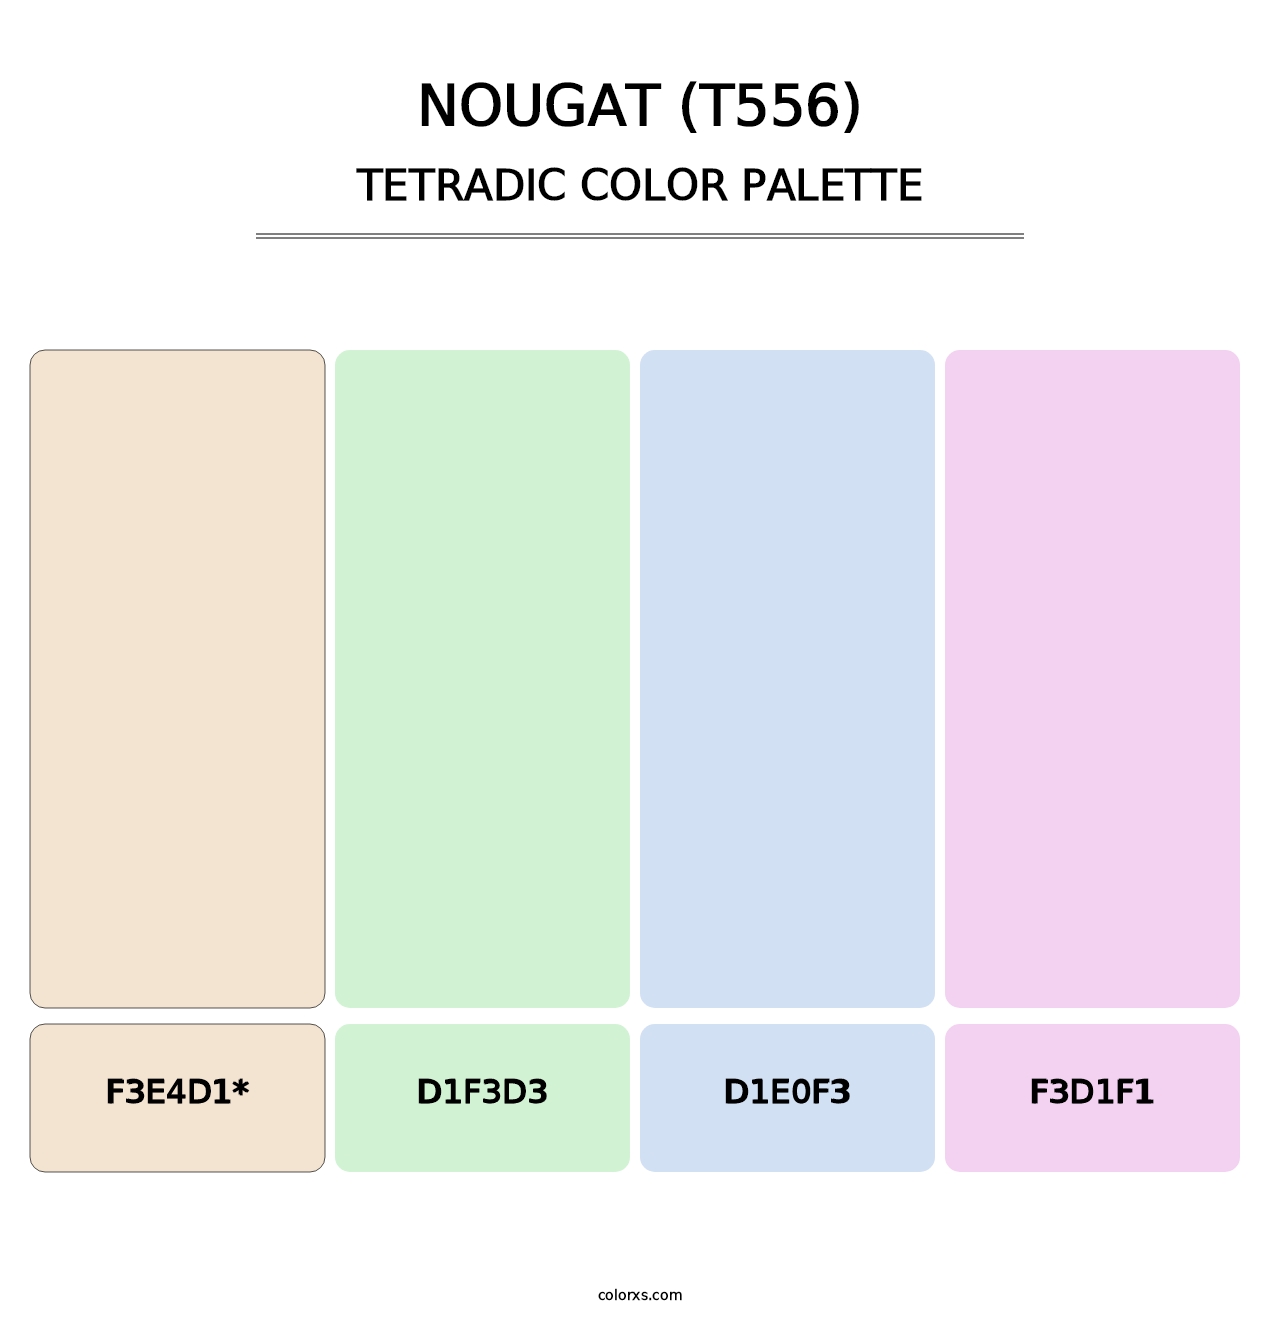 Nougat (T556) - Tetradic Color Palette